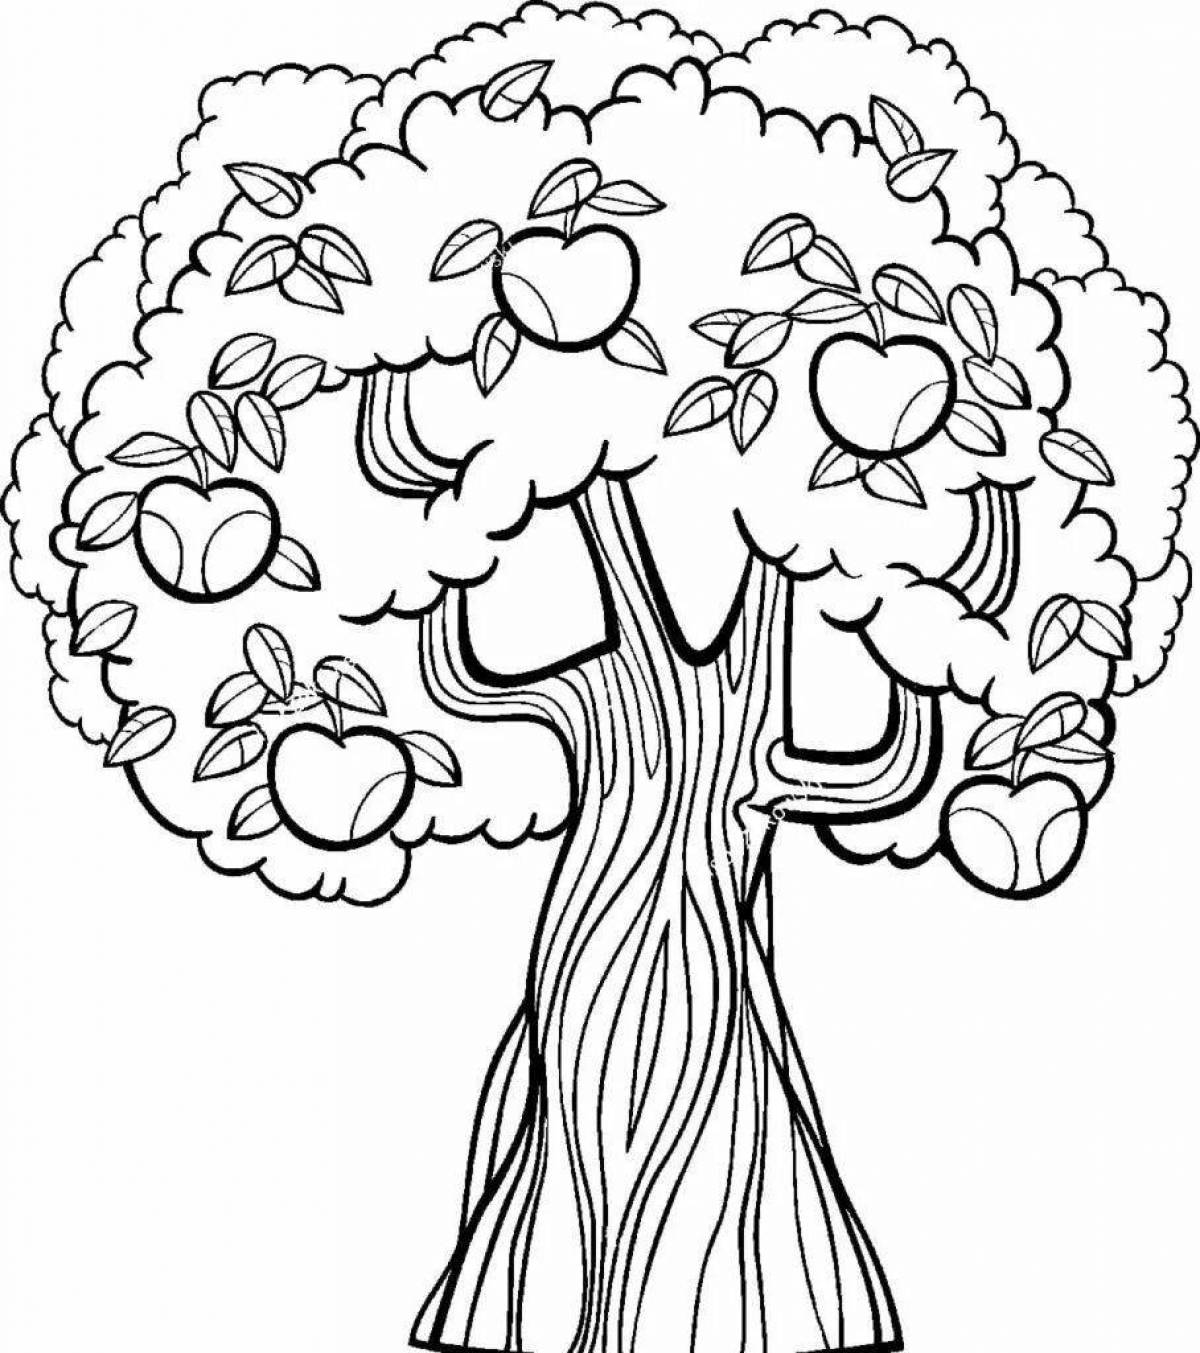 Праздничное дерево с яблоками для тайкса